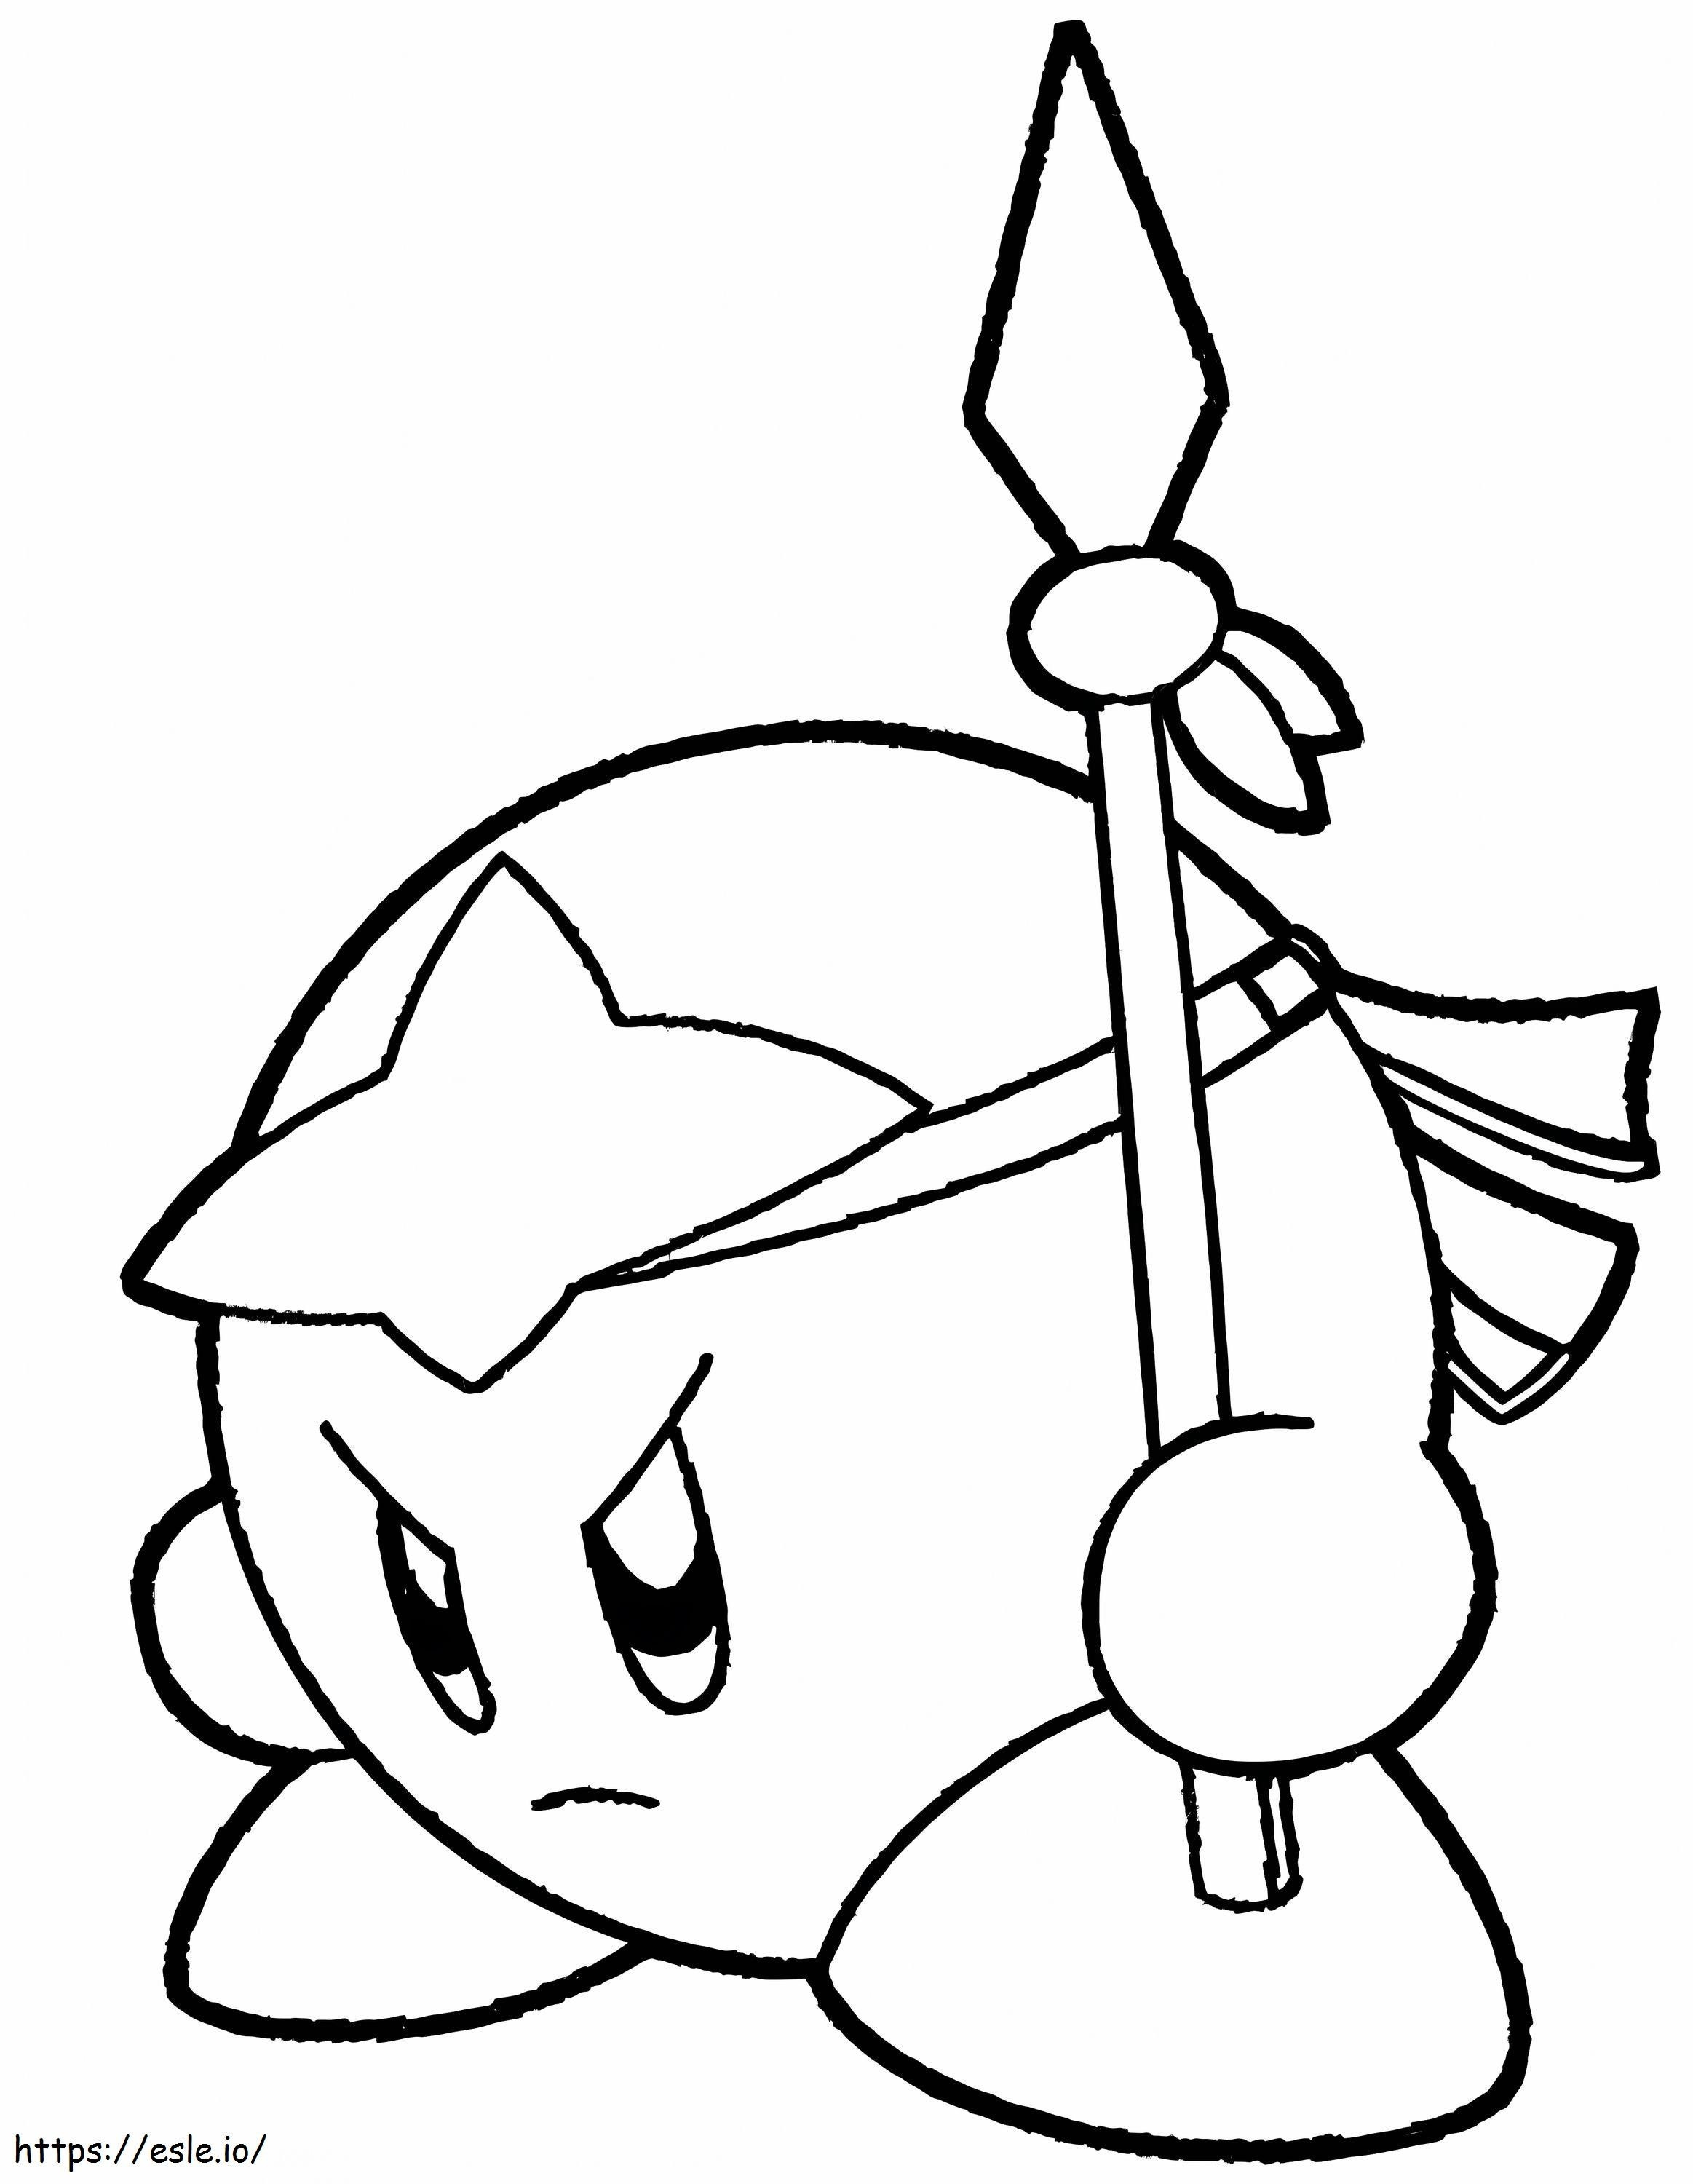 Kirby kezében egy lándzsát kifestő